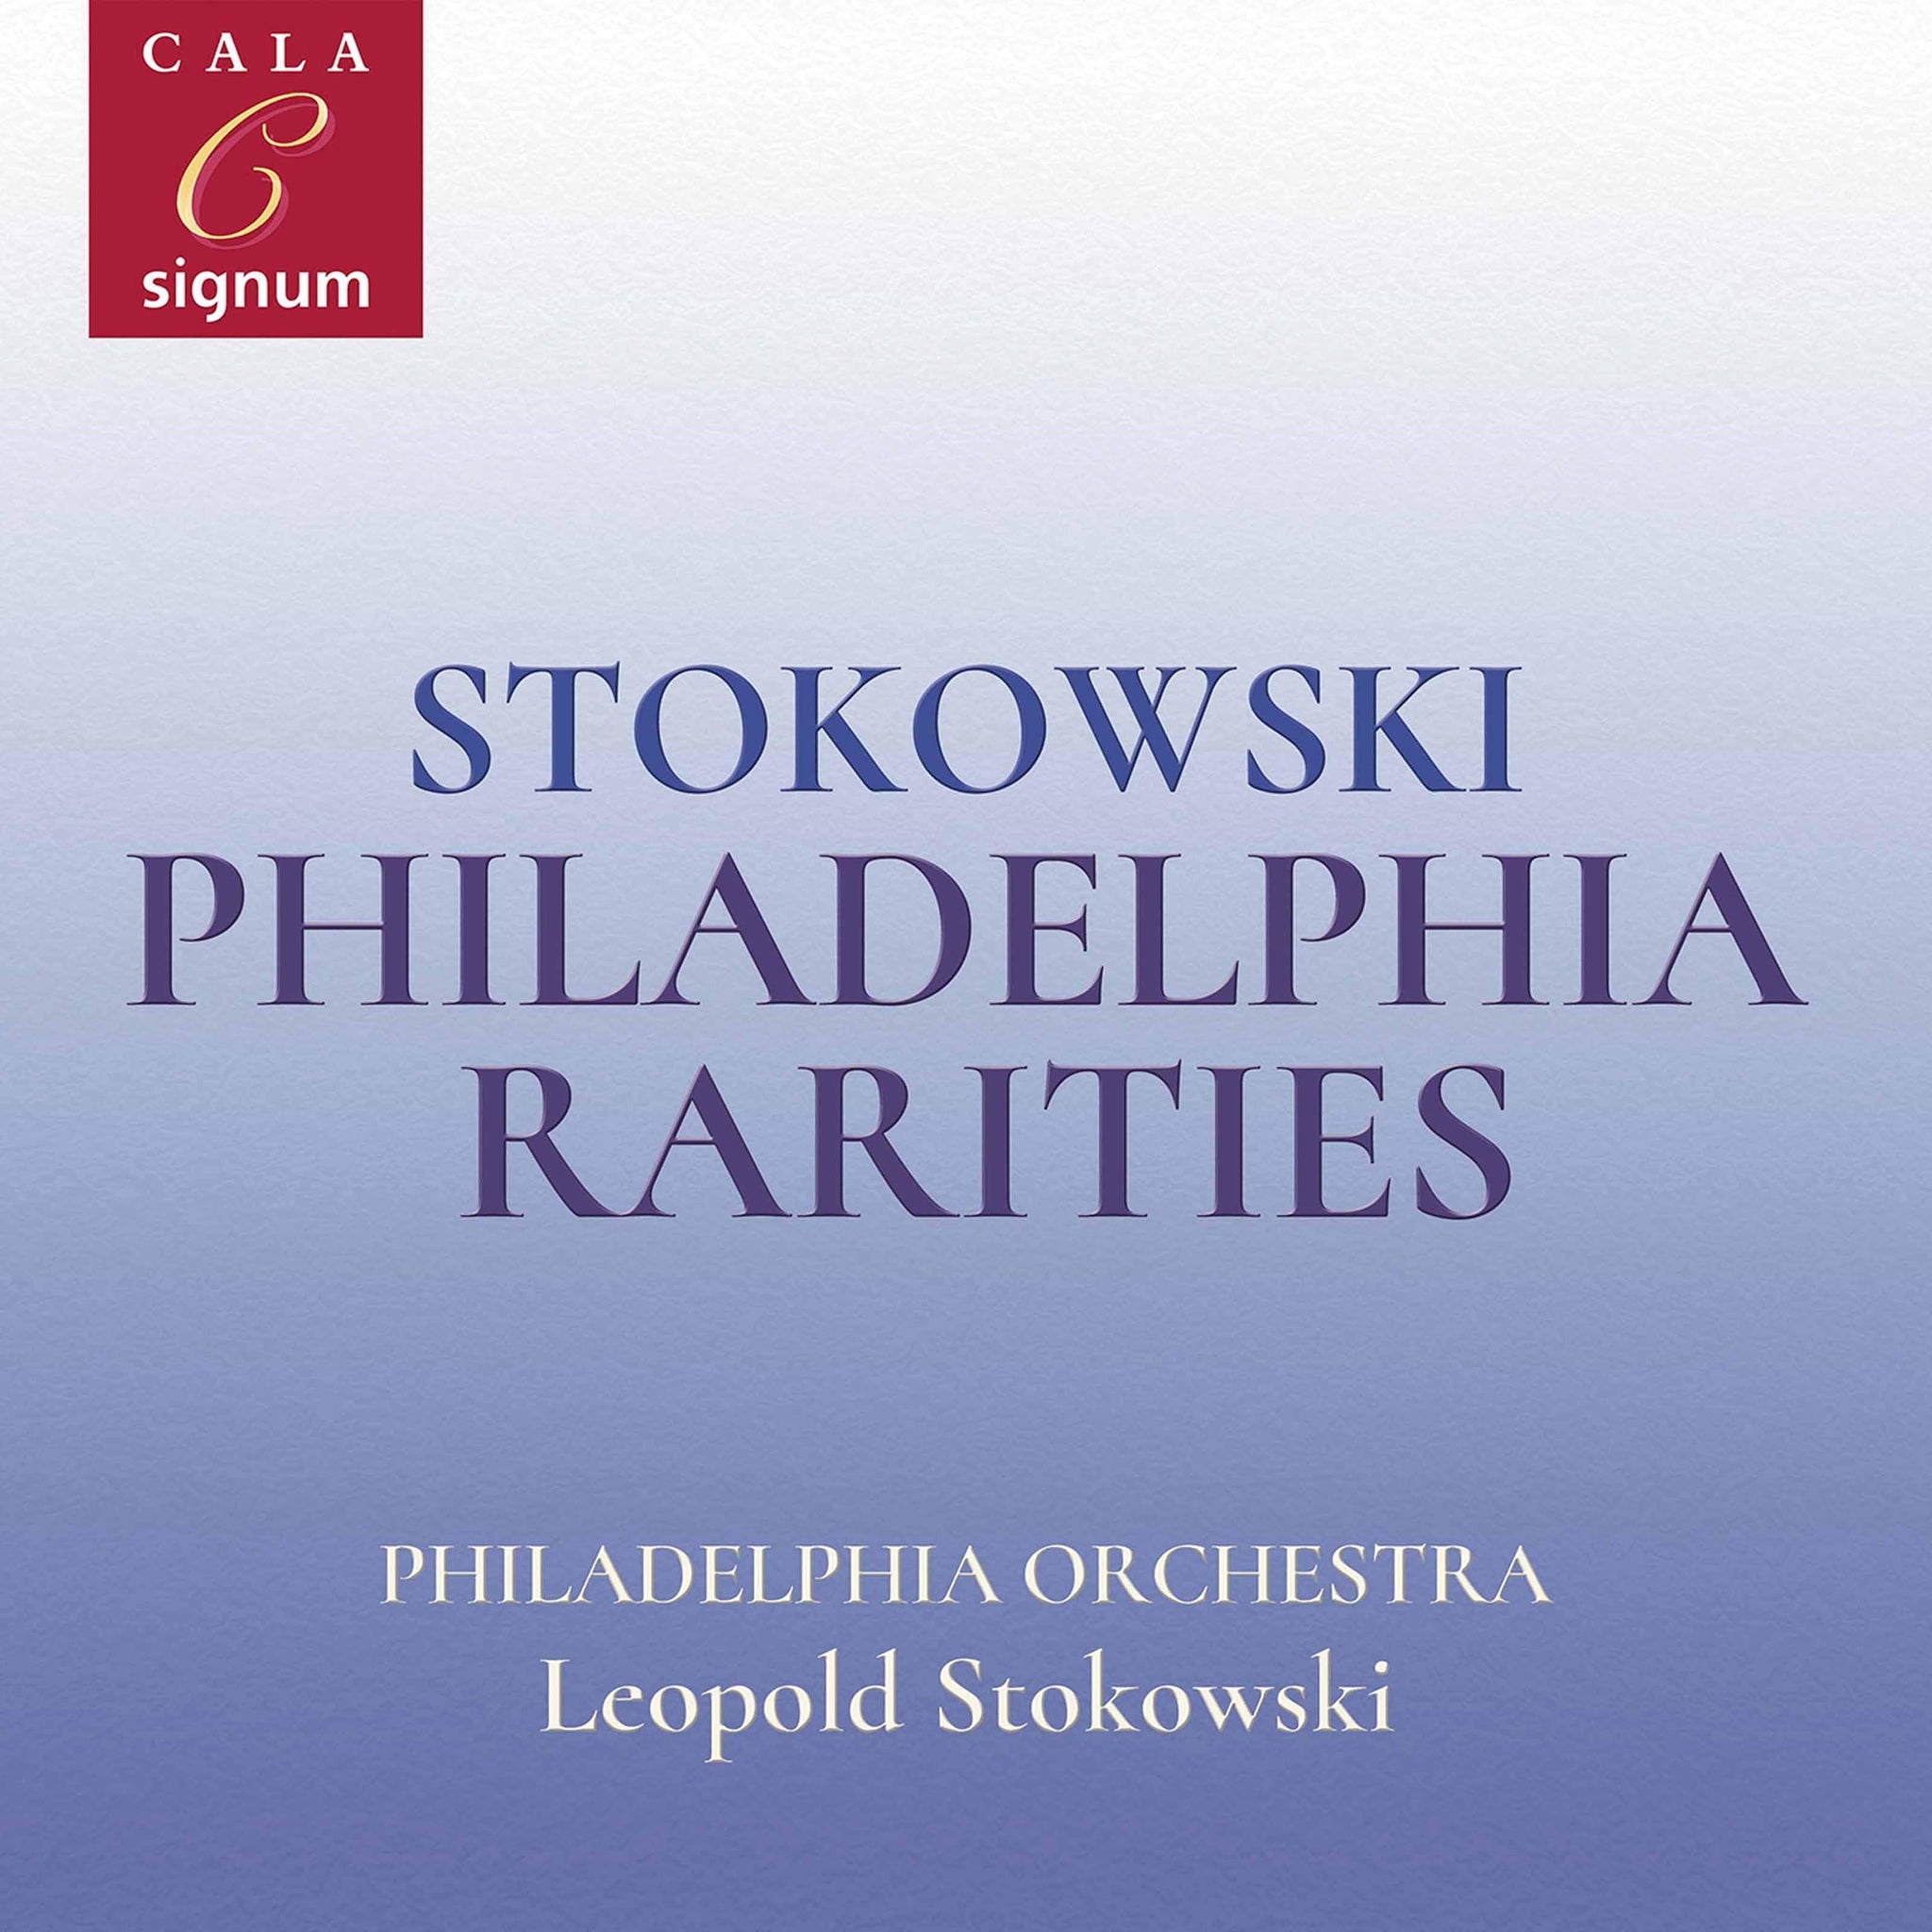 Stokowski: Philadelphia Rarities / Stokowski, Philadelphia Orchestra - ArkivMusic